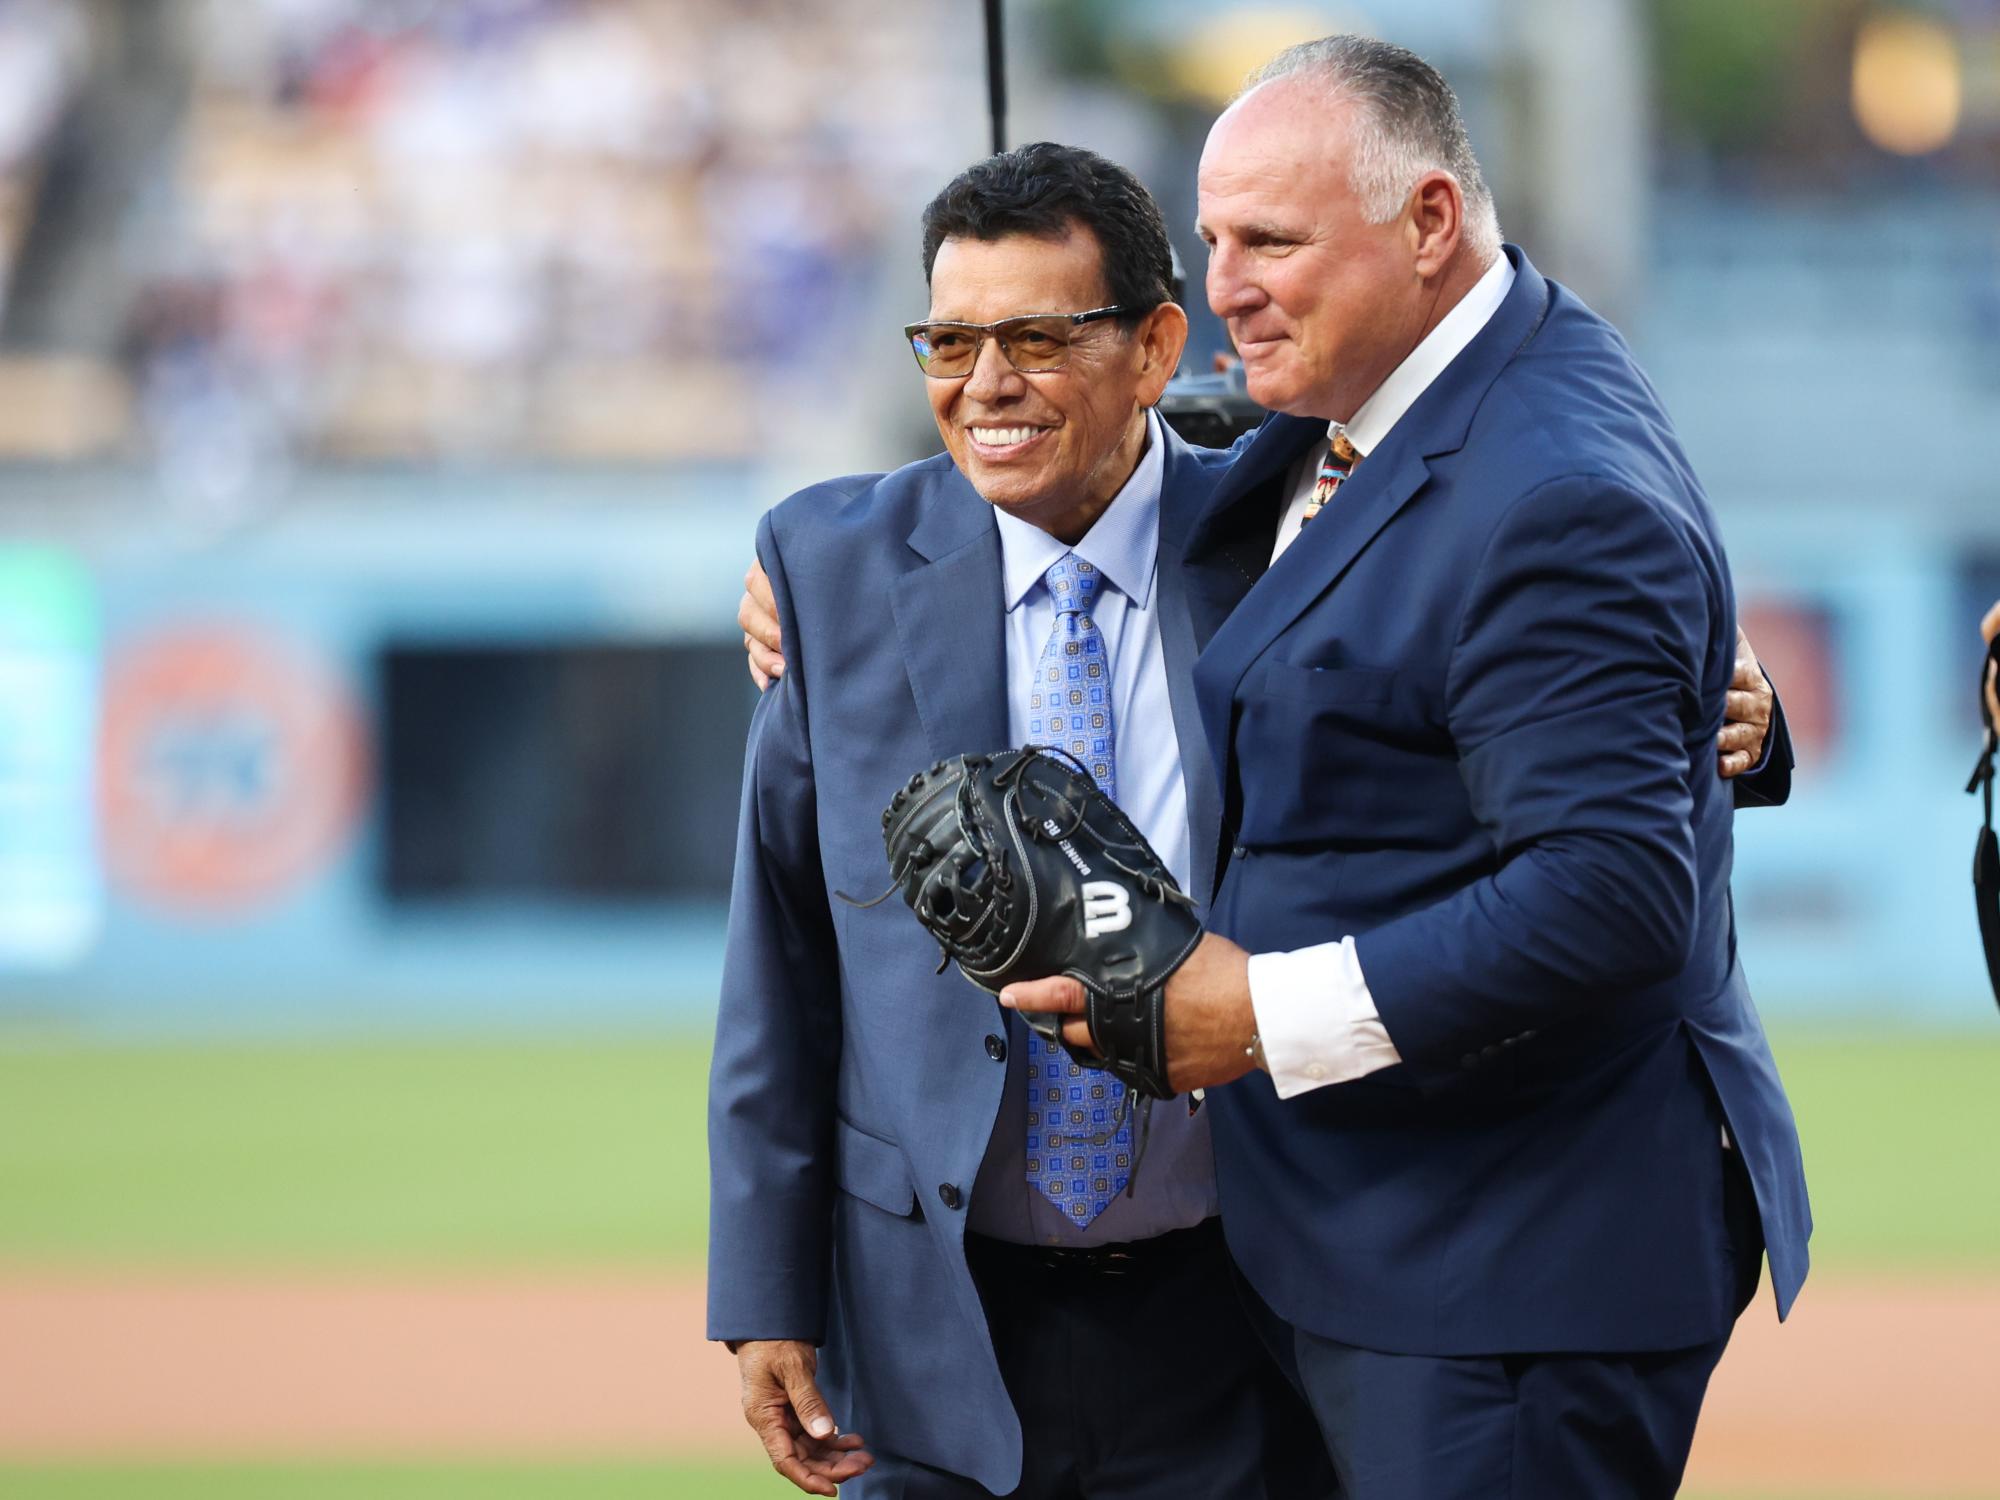 $!El número 34 de Fernando Valenzuela pasa a la inmortalidad de Dodgers